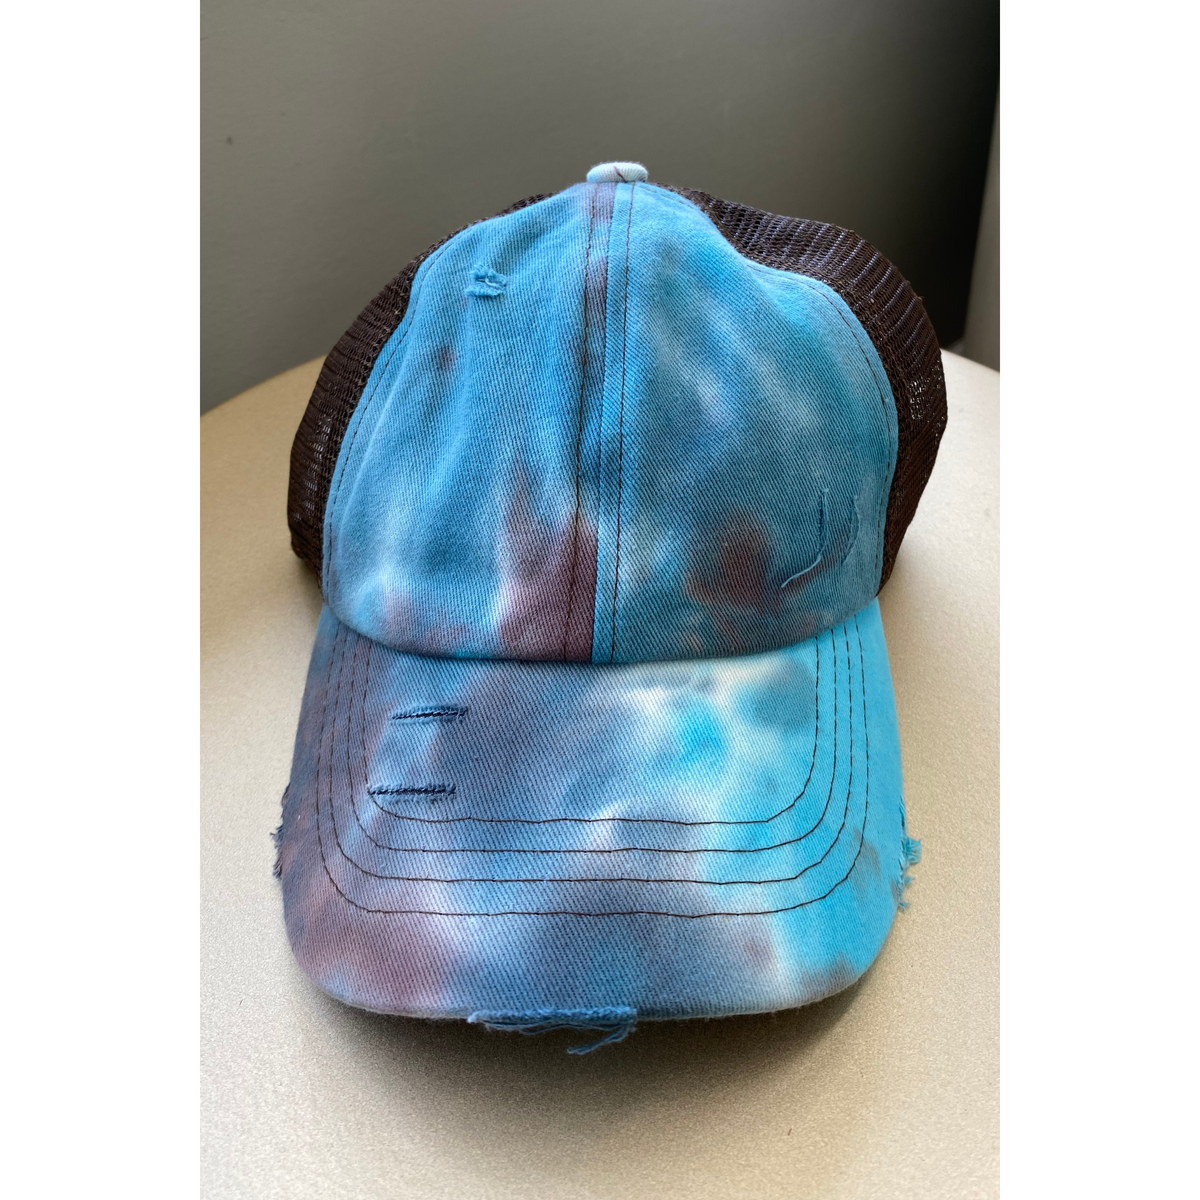 C.C. Tie Dye Ponytail Hats